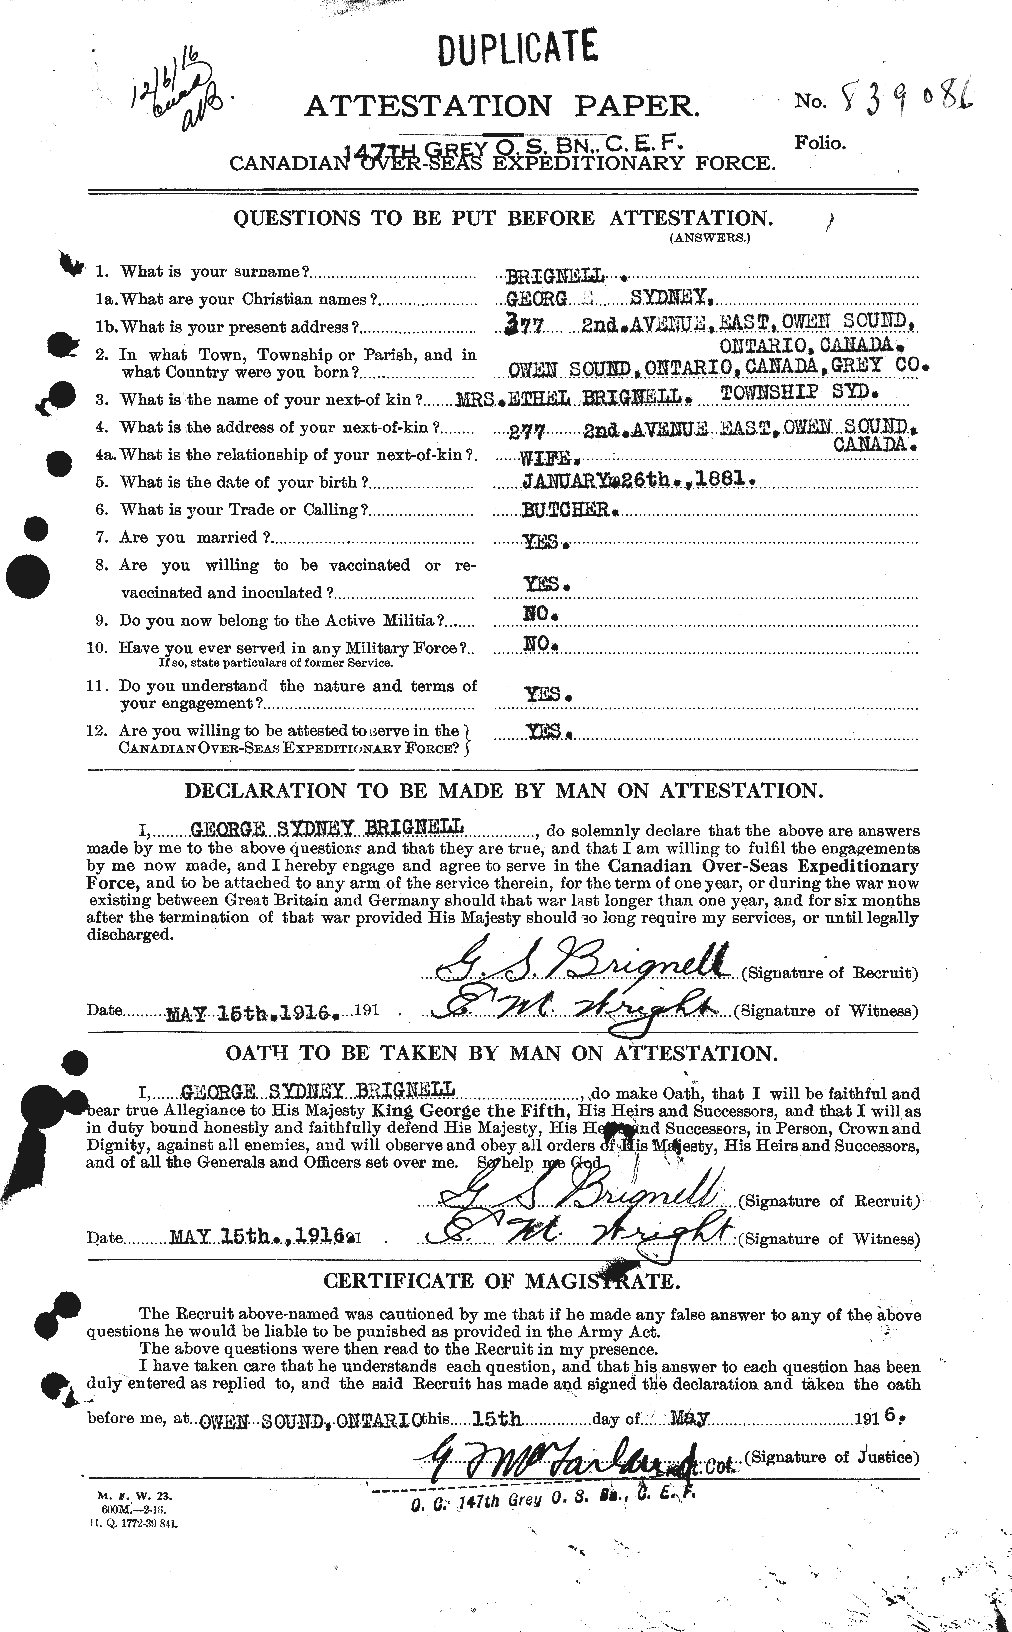 Dossiers du Personnel de la Première Guerre mondiale - CEC 265139a